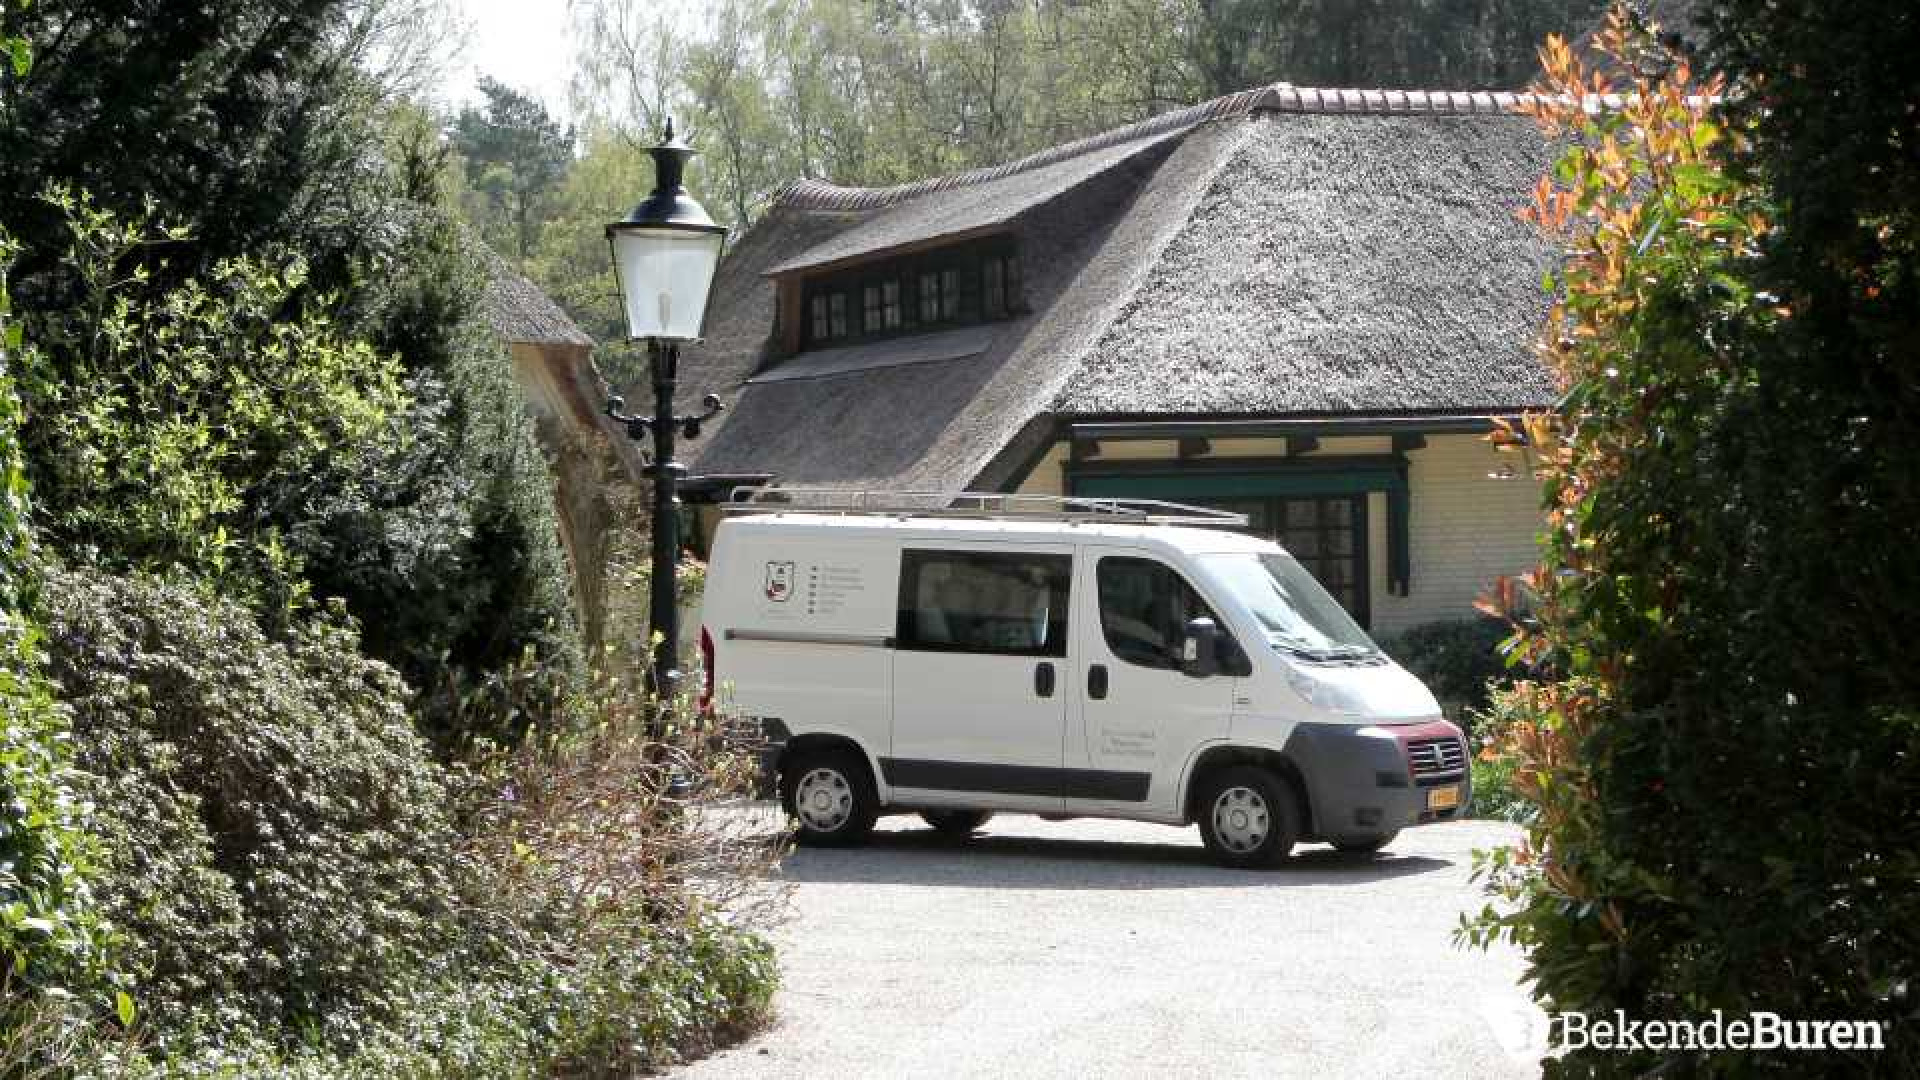 Prinses Irene koopt kapitale villa in Doorn. Zie foto's 3